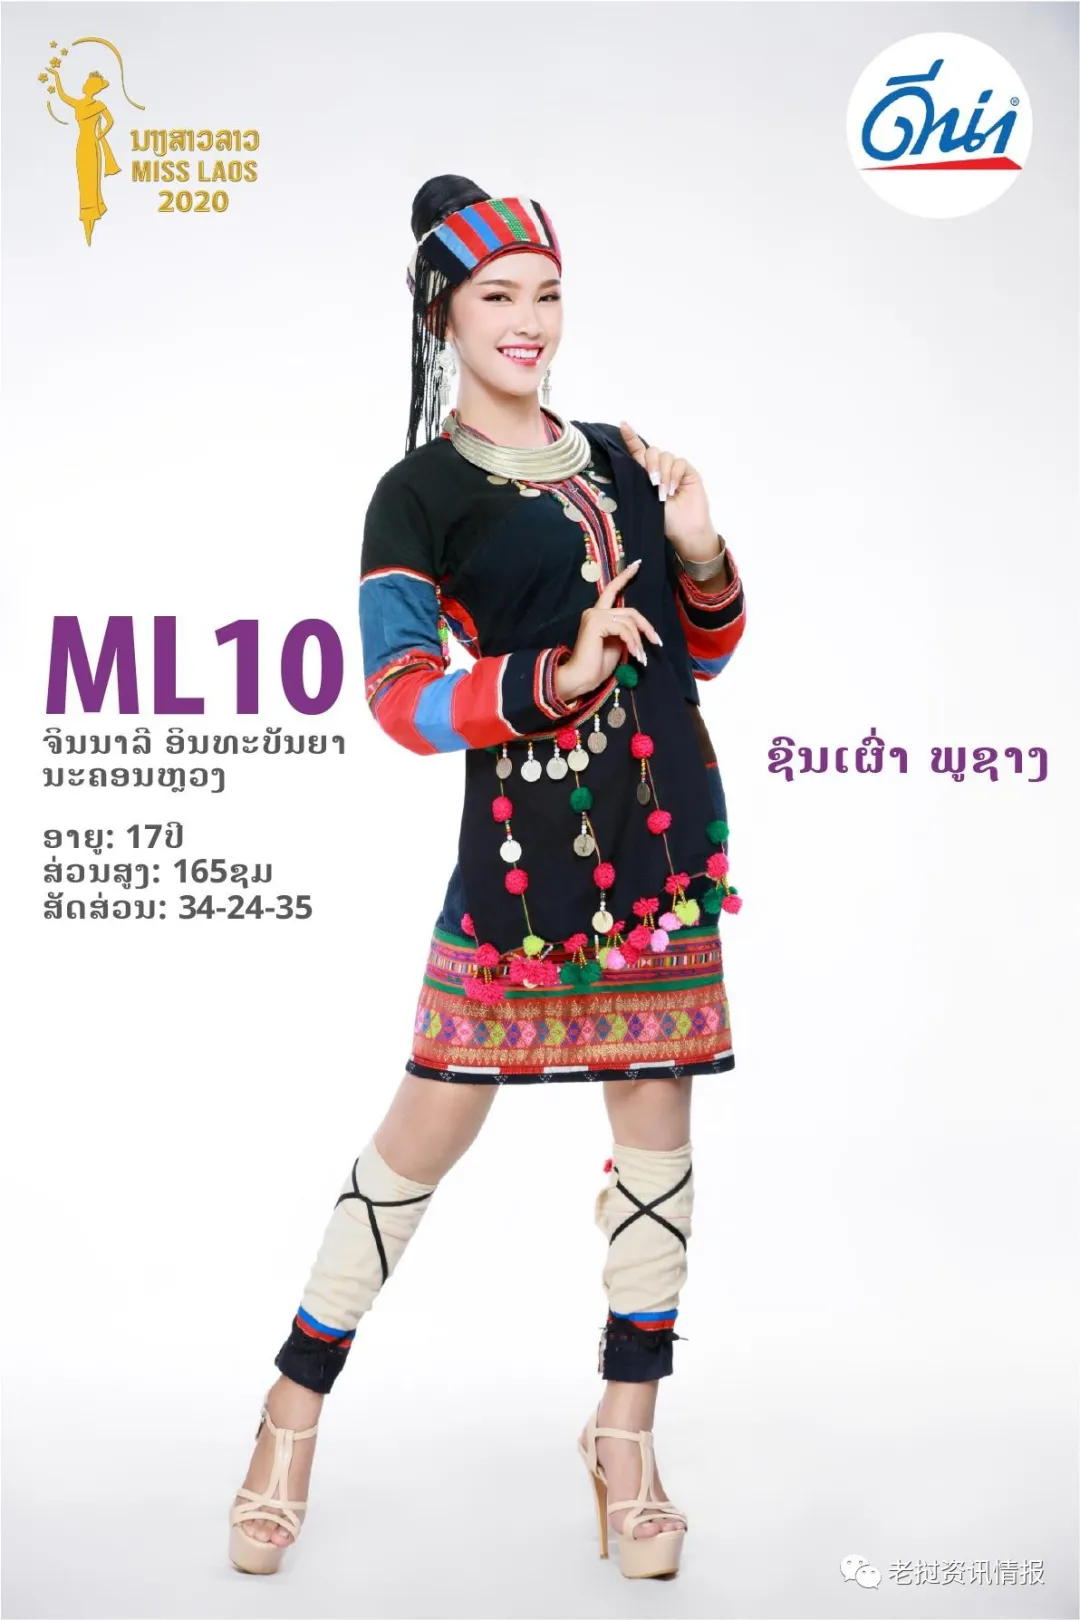 Trang phục dân tộc Phuchang của thí sinh thủ đô Vientiane